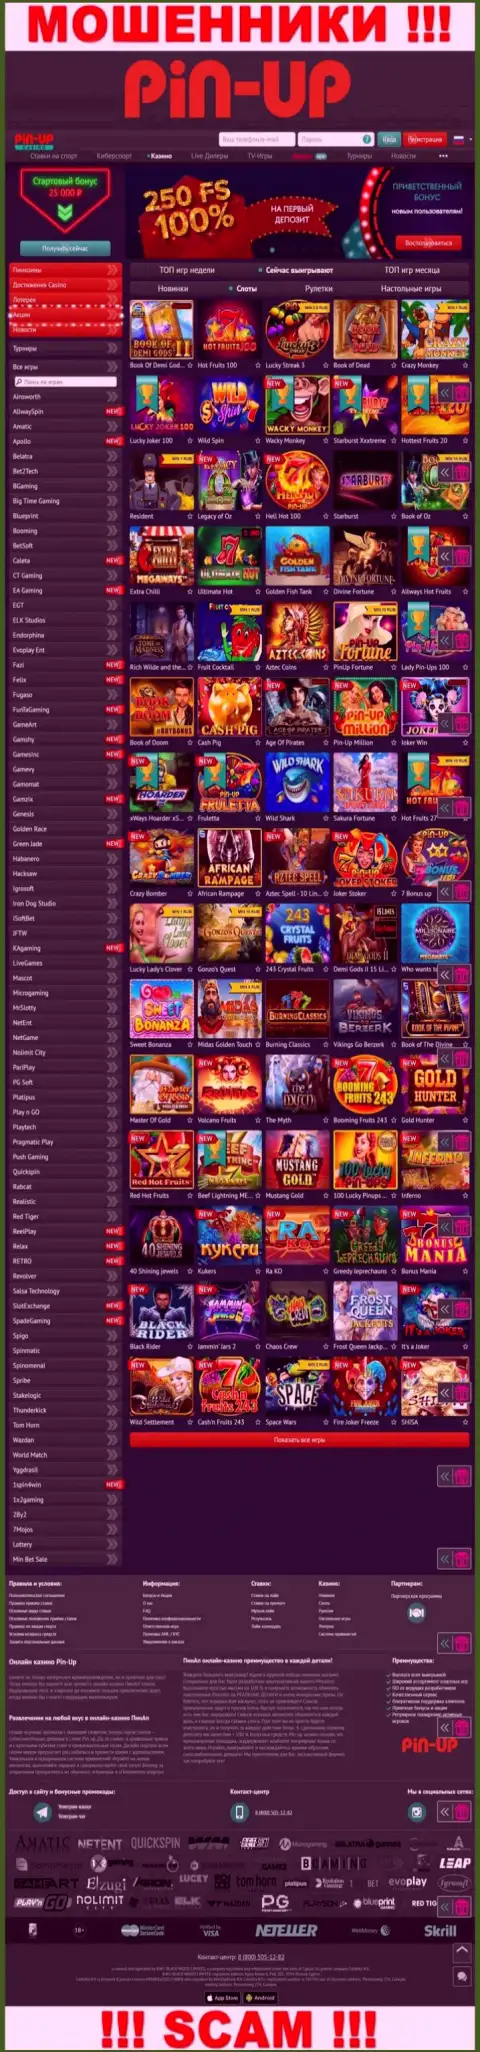 Pin-Up Casino - это официальный информационный портал махинаторов Пин АпКазино